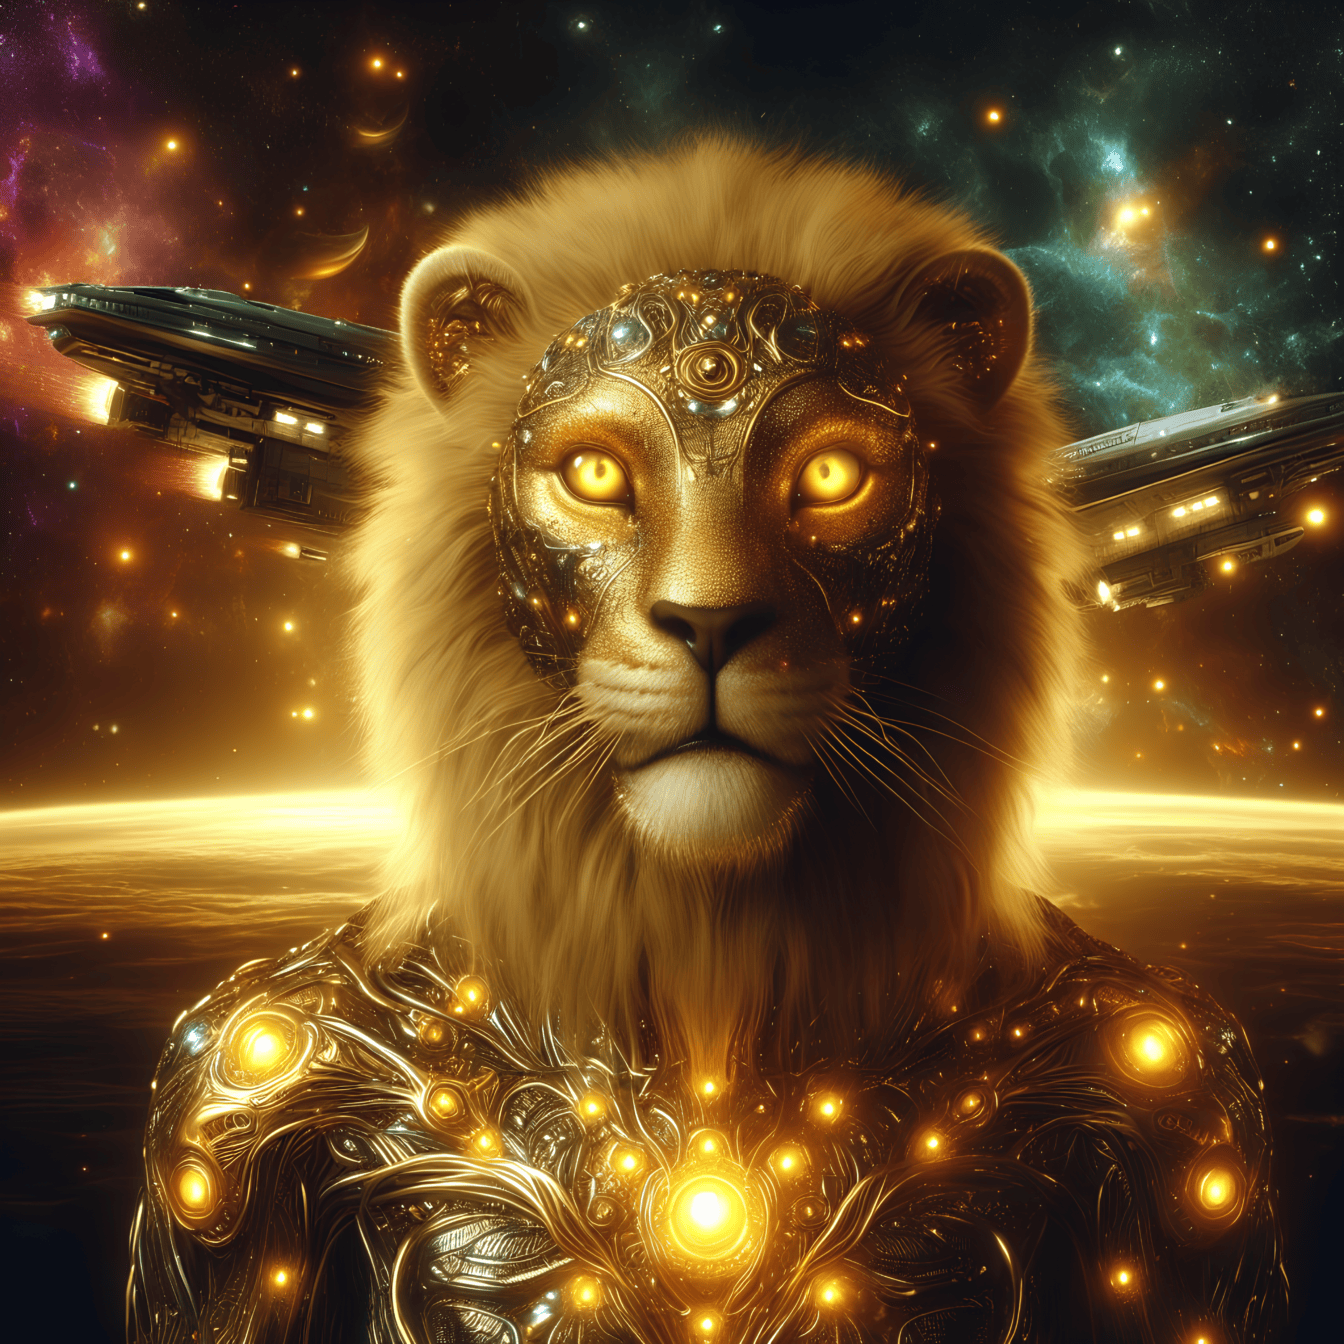 Retrato de una deidad dorada, un alienígena león-cyborg con armadura brillante con naves espaciales en el fondo